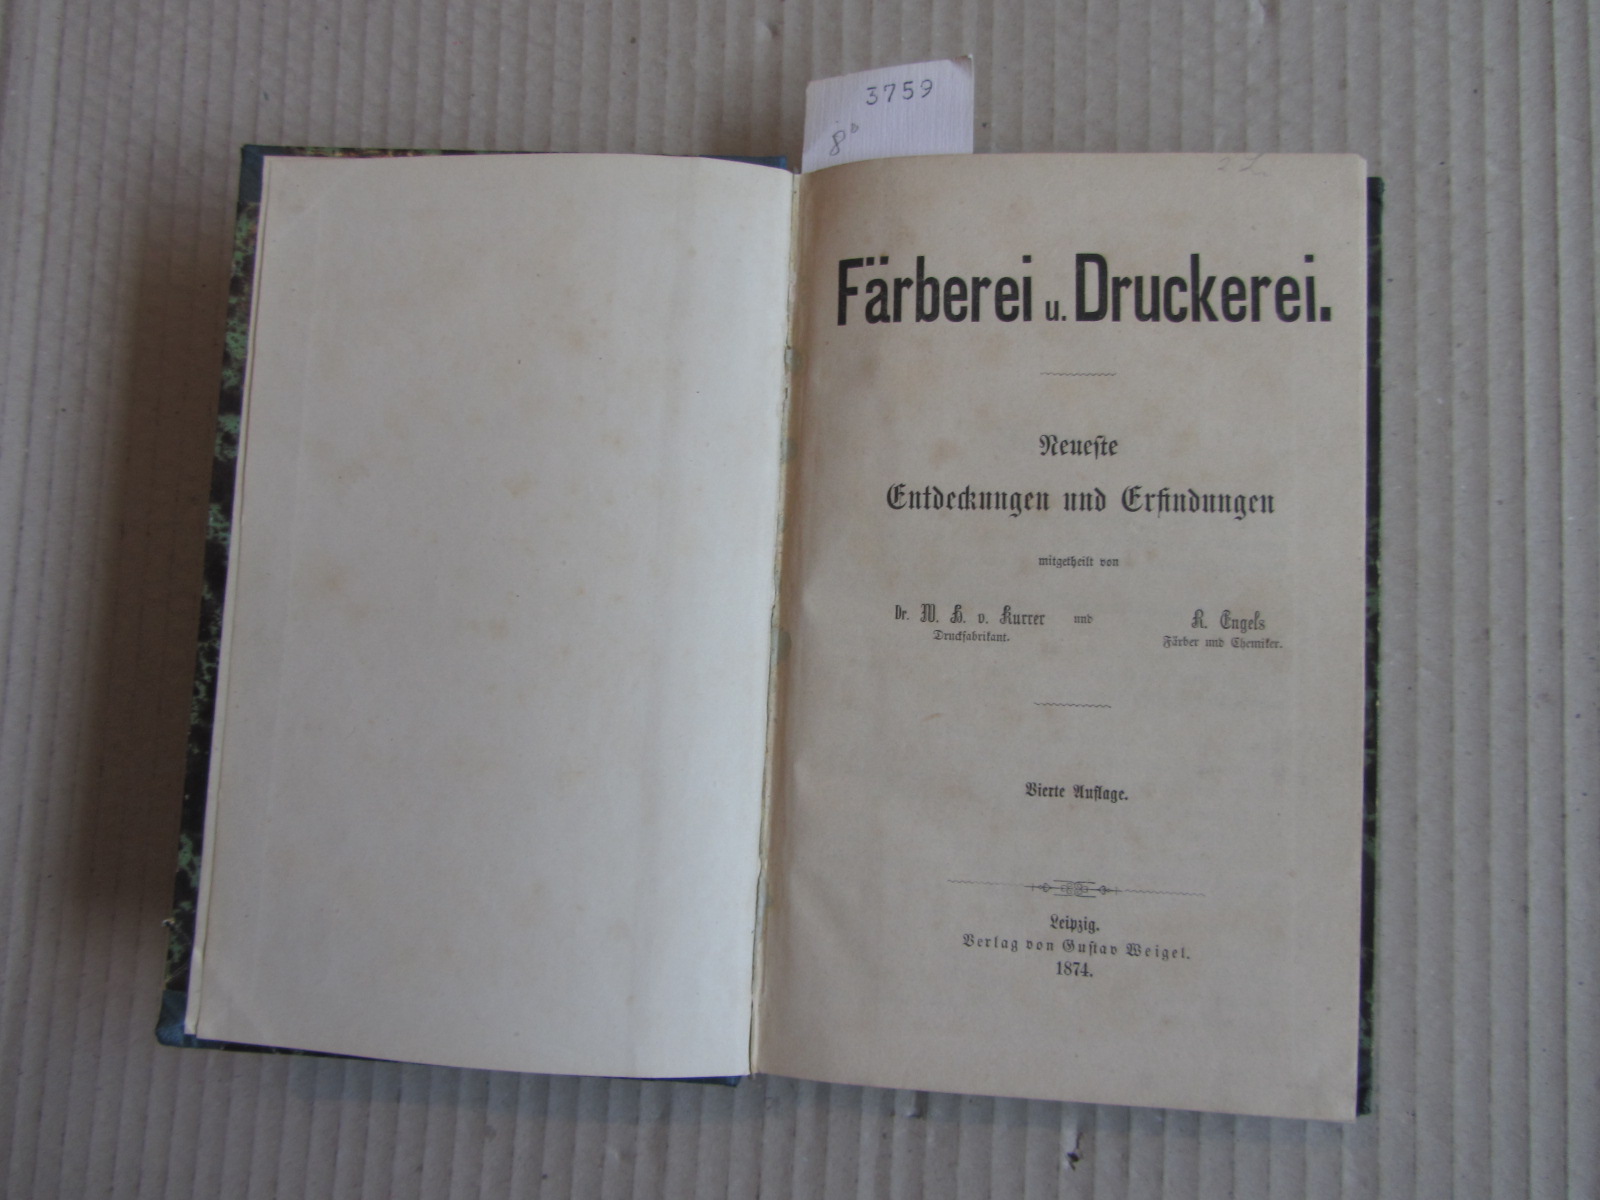 Kurrer, W.H  von und R. Engels:  Färberei u. Druckerei. Neueste Entdeckungen und Erfindungen. 